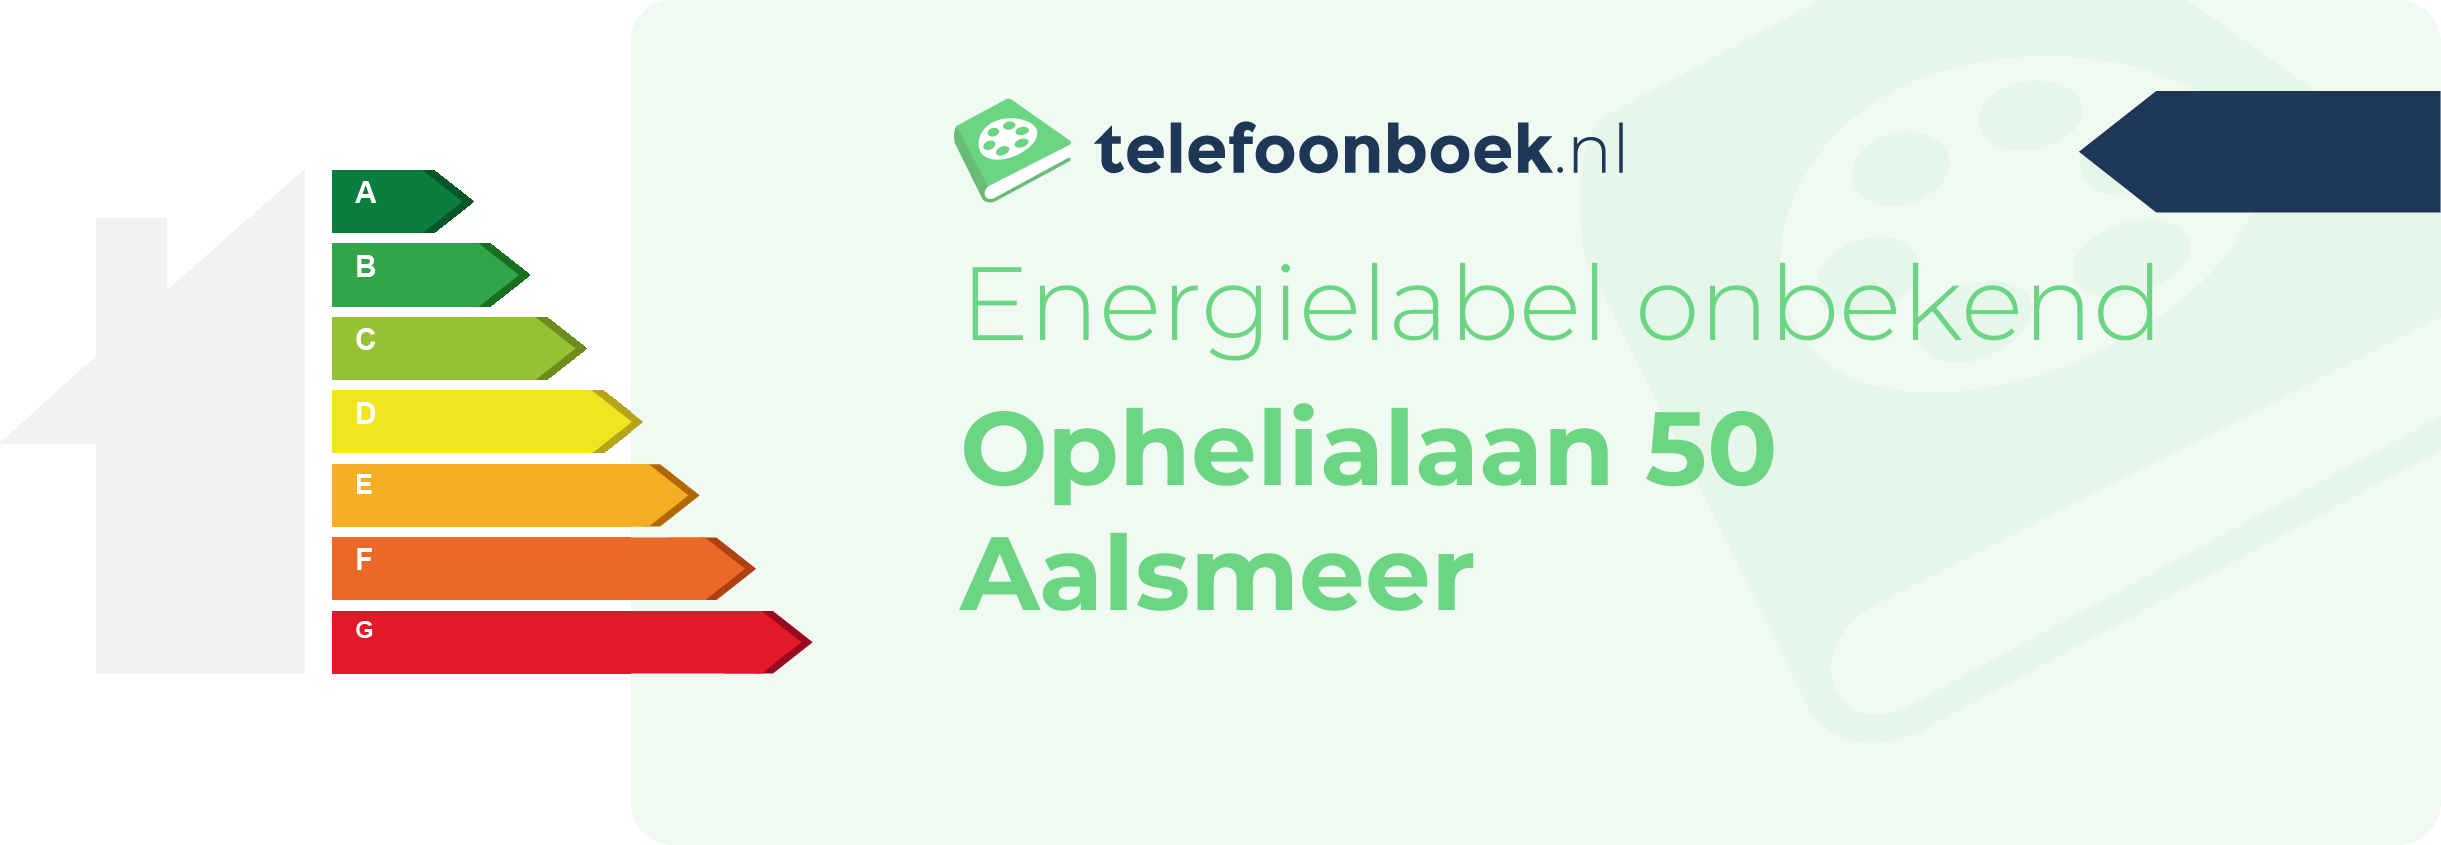 Energielabel Ophelialaan 50 Aalsmeer